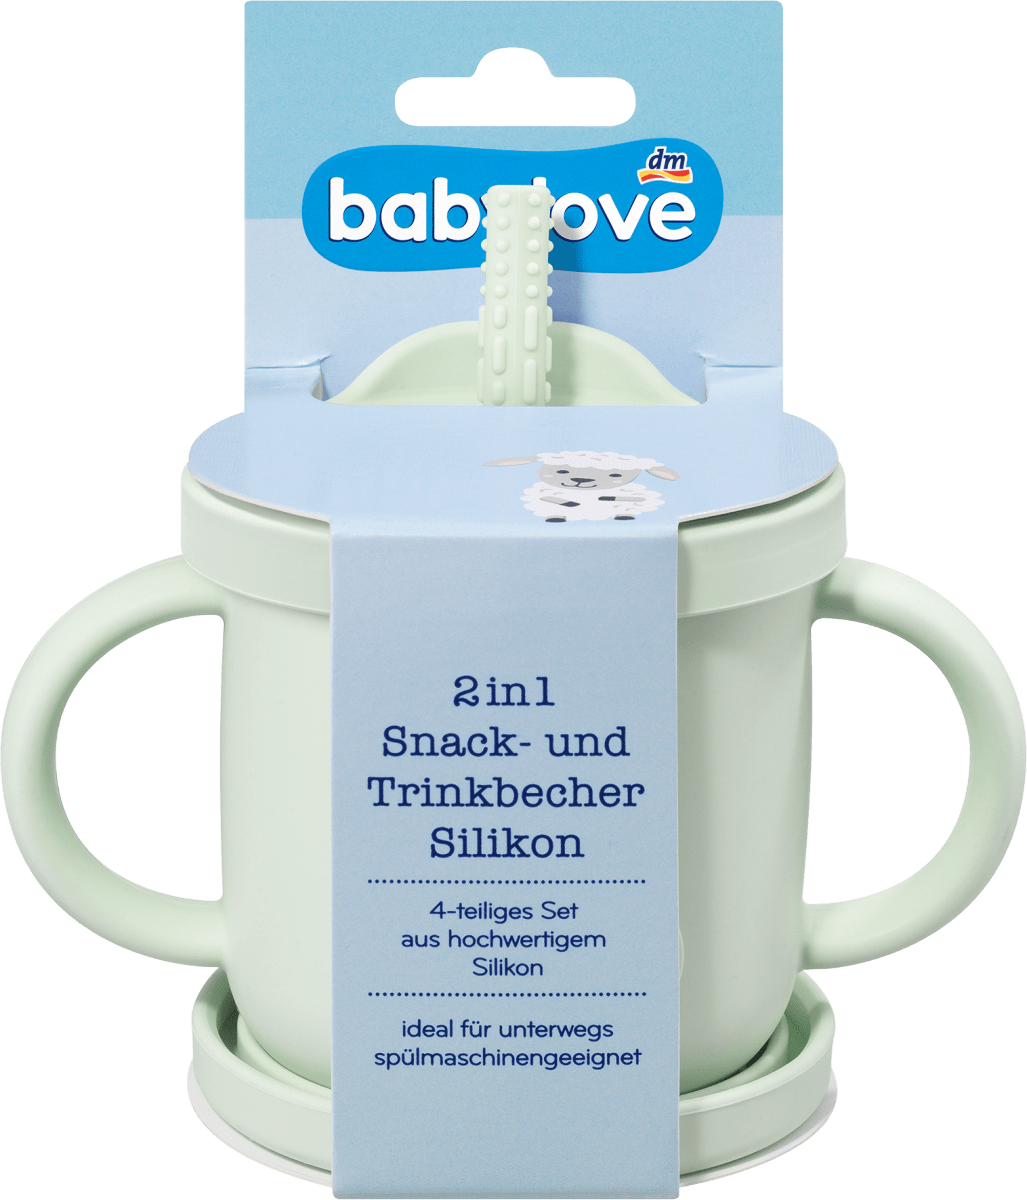 babylove Snack- und Trinkbecher 2in1 Silikon mint, 1 St dauerhaft